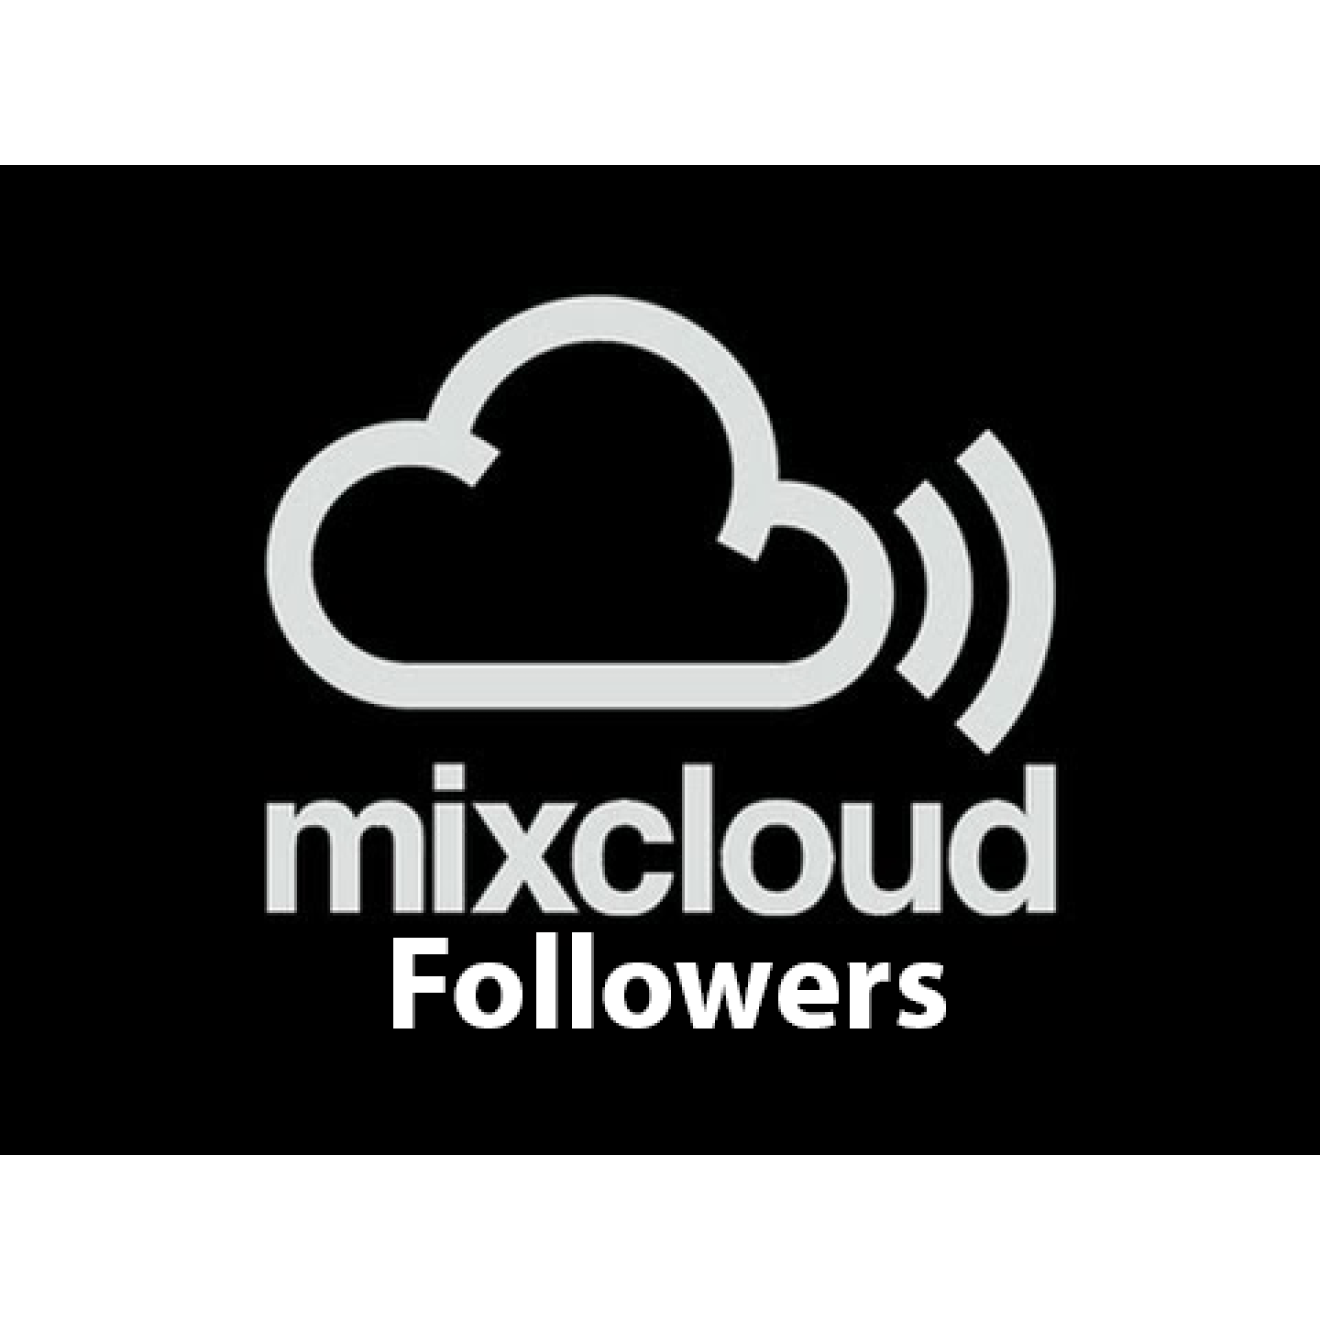 1500 Mixcloud Followers / Abonnenten für Dich